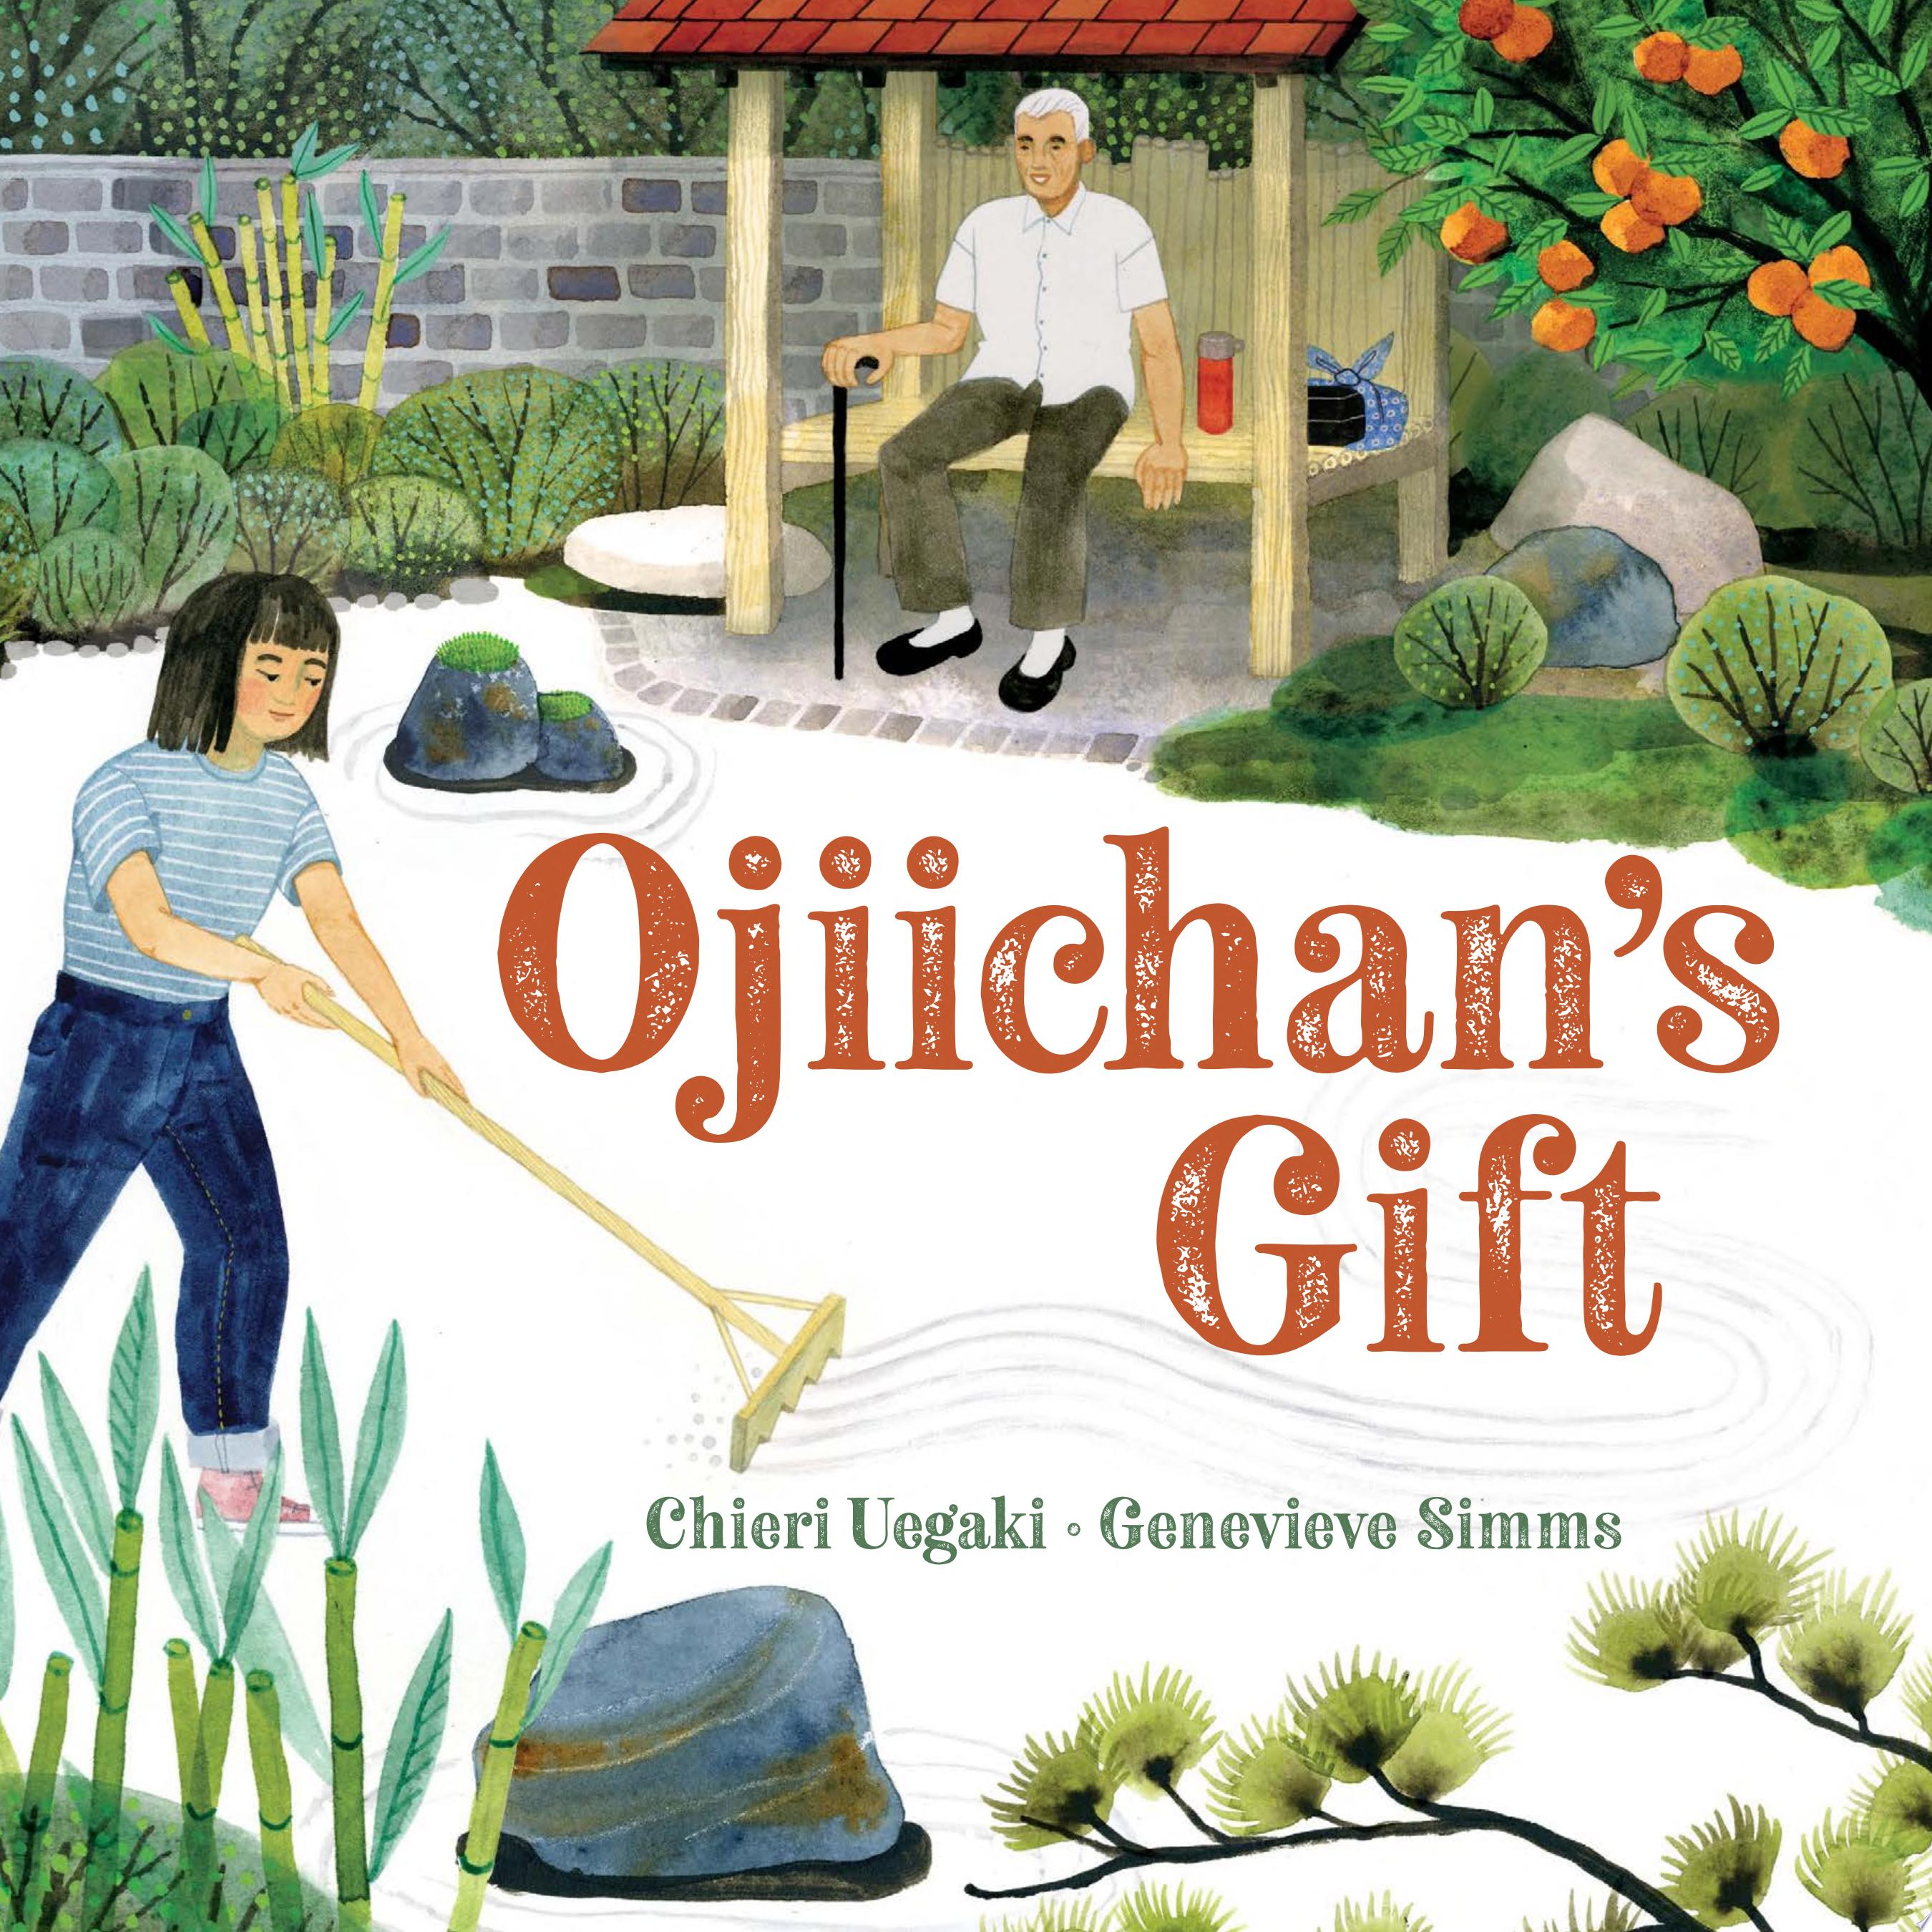 Image for "Ojiichan's Gift"